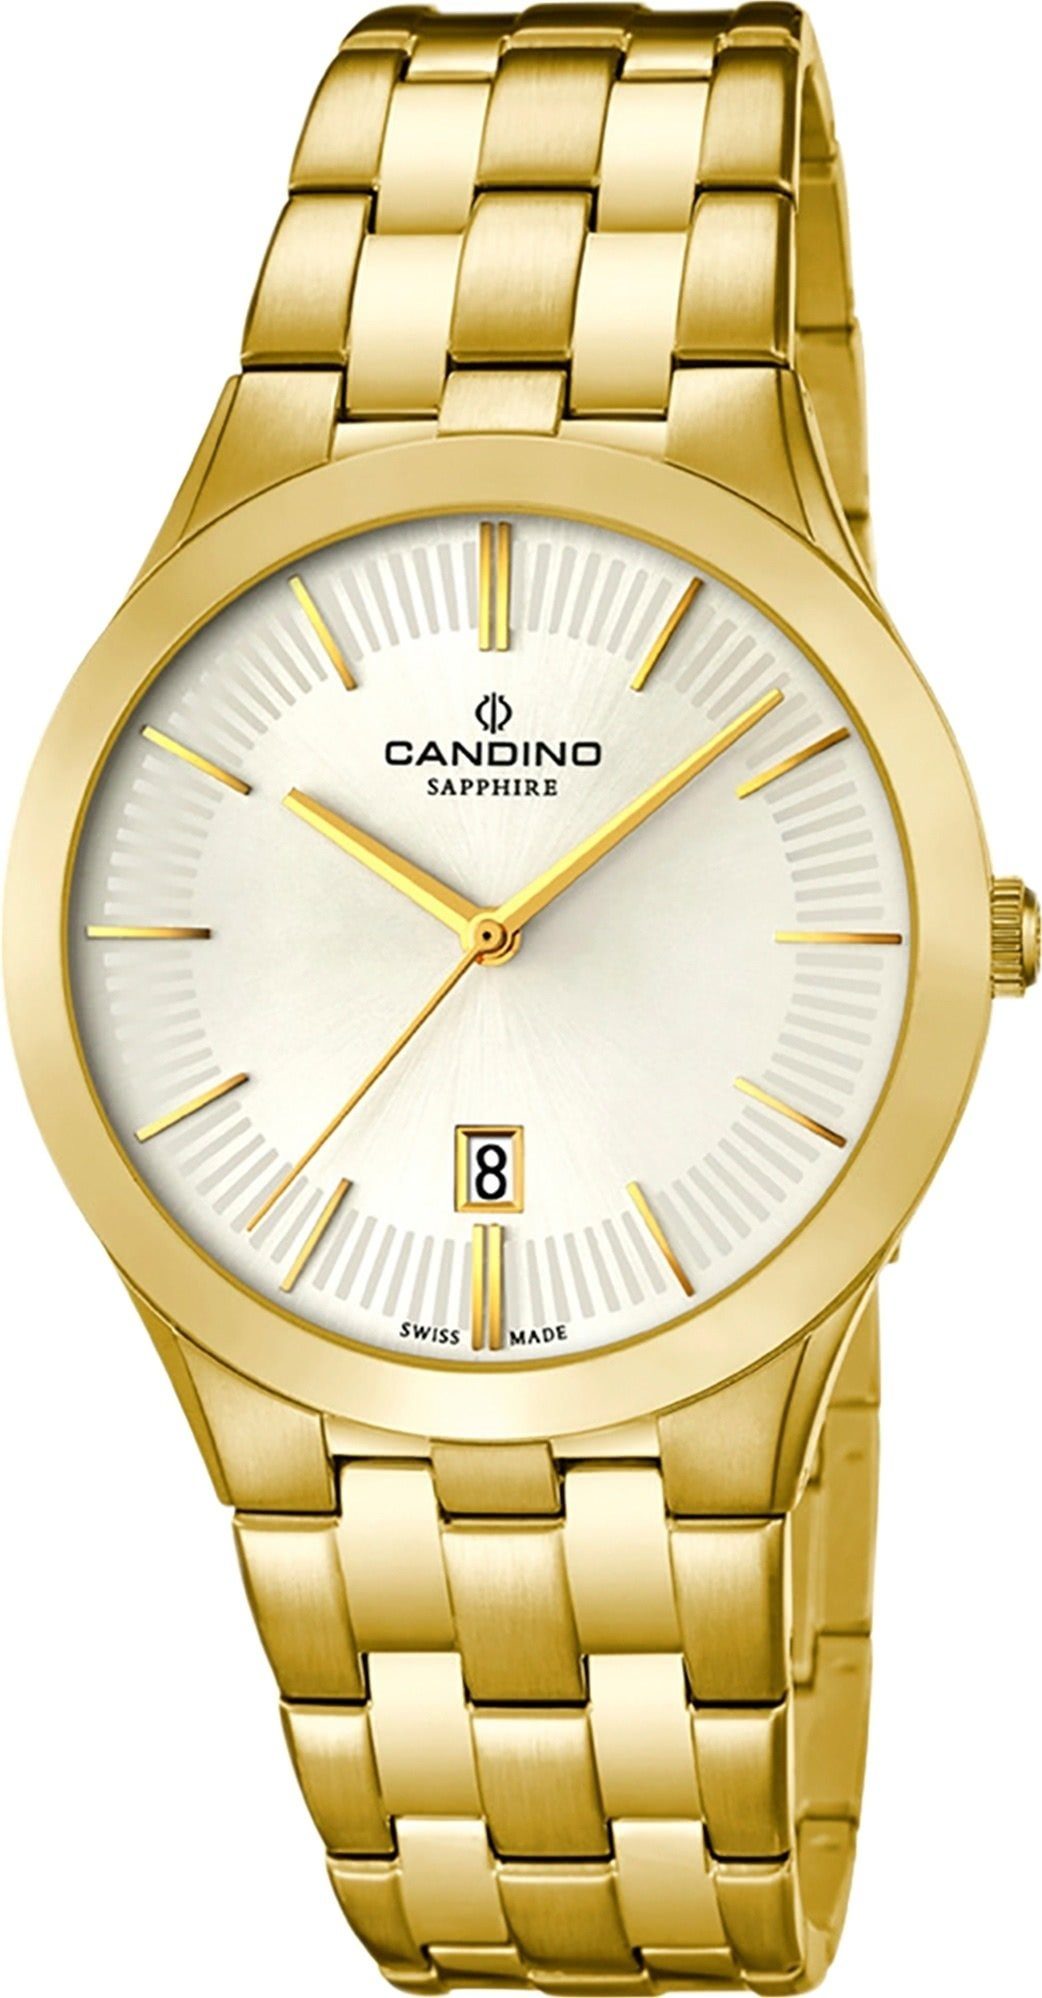 Uhr Edelstahl Herren beschichtet Herren Gelbgold Candino Luxus PVD gold, Armbanduhr Quarzuhr rund, Analog C4541/1, Candino